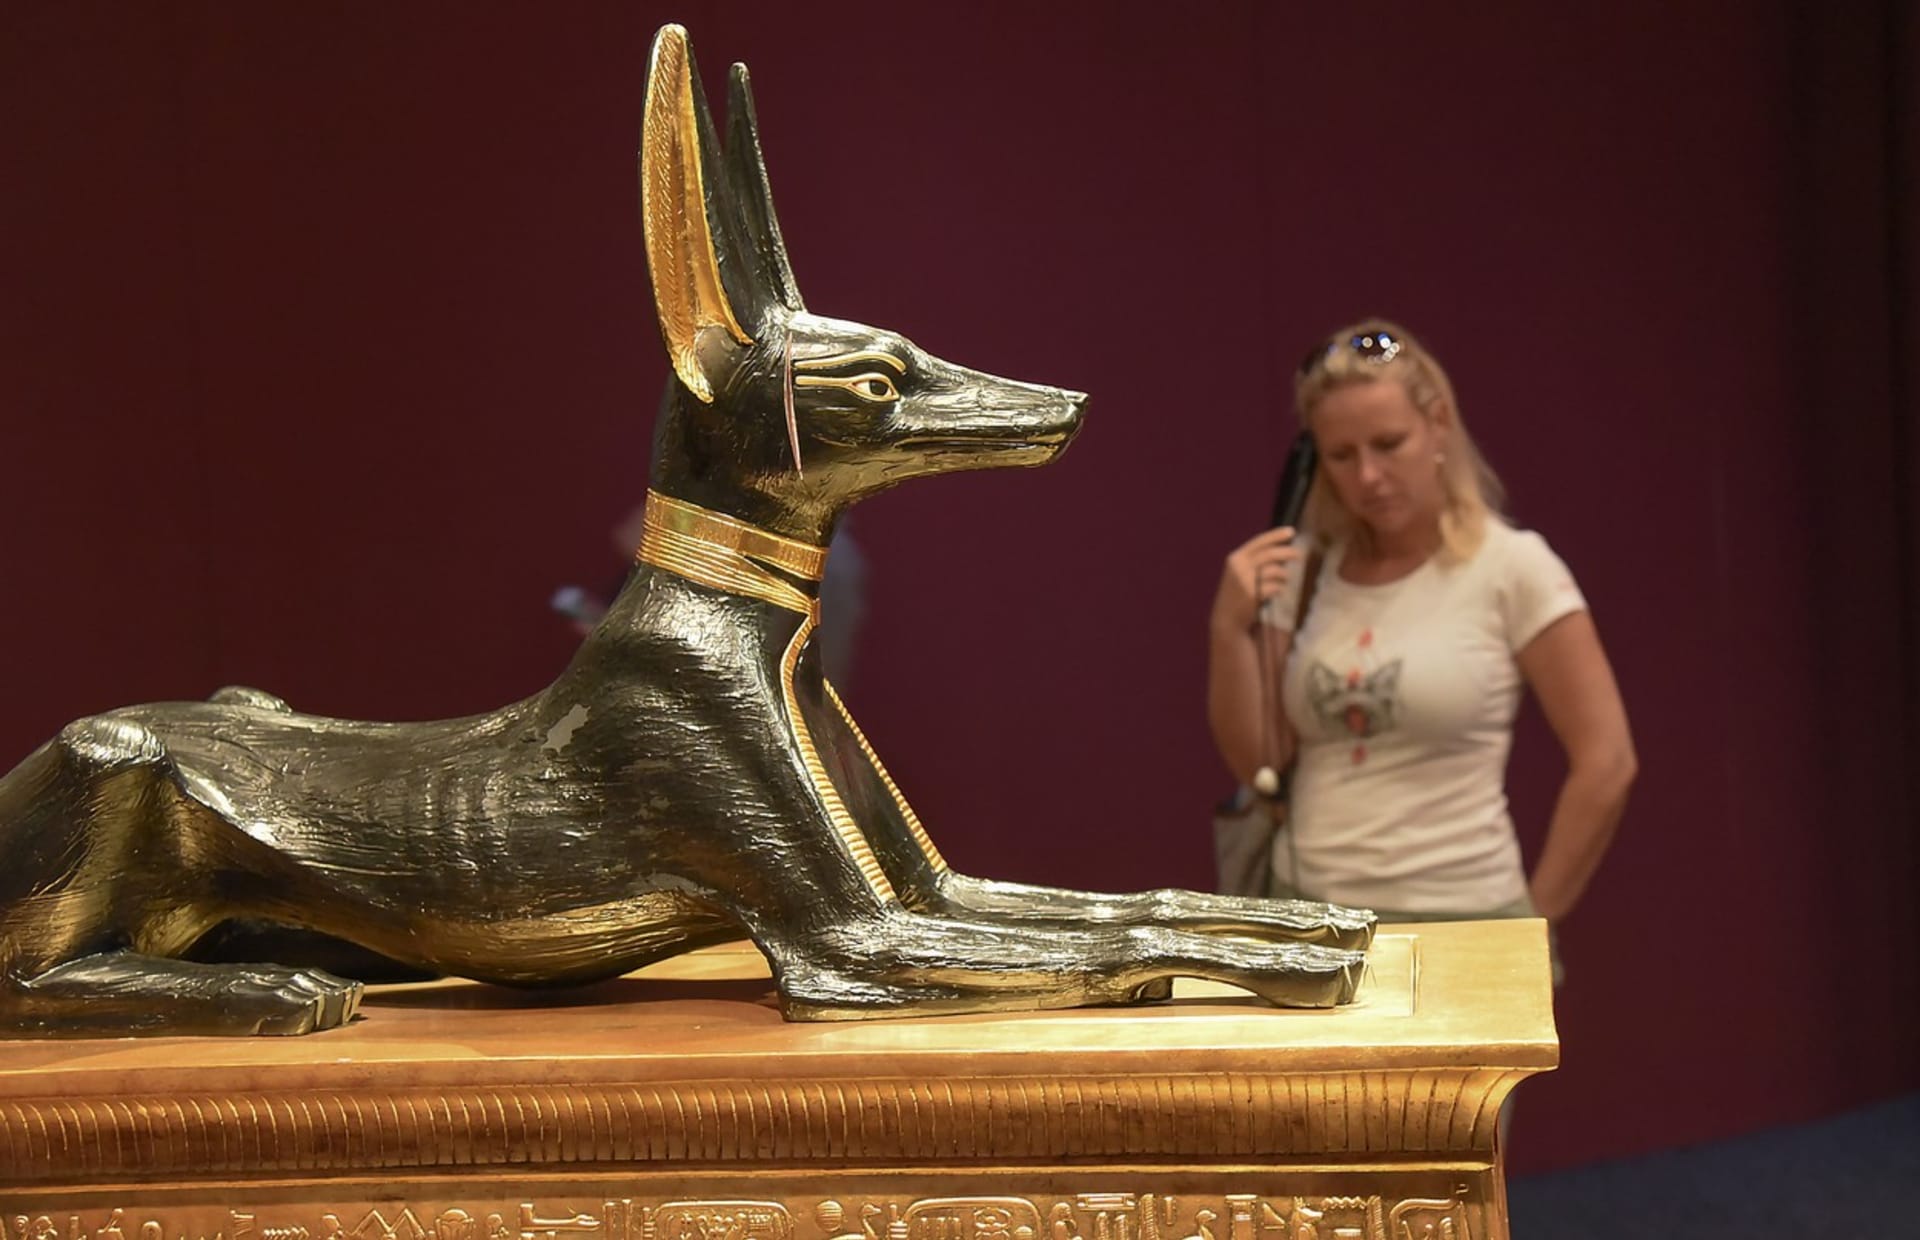 Výstava o Tutanchamonovi nabízí stovky unikátních předmětů